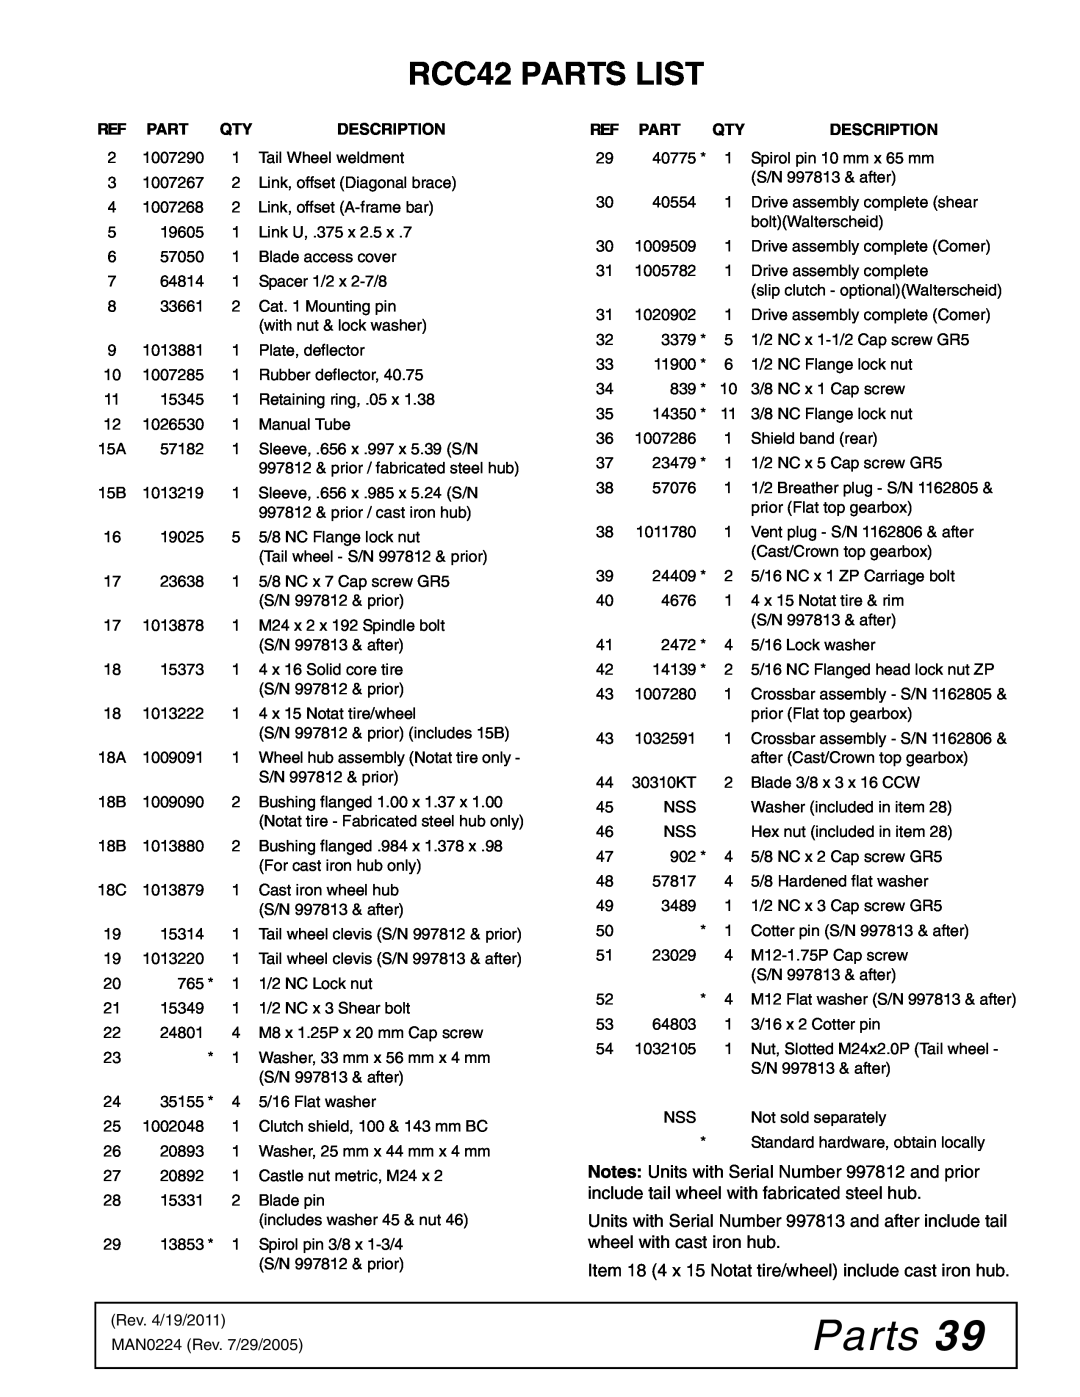 Woods Equipment manual RCC42 PARTS LIST, Parts, Description 